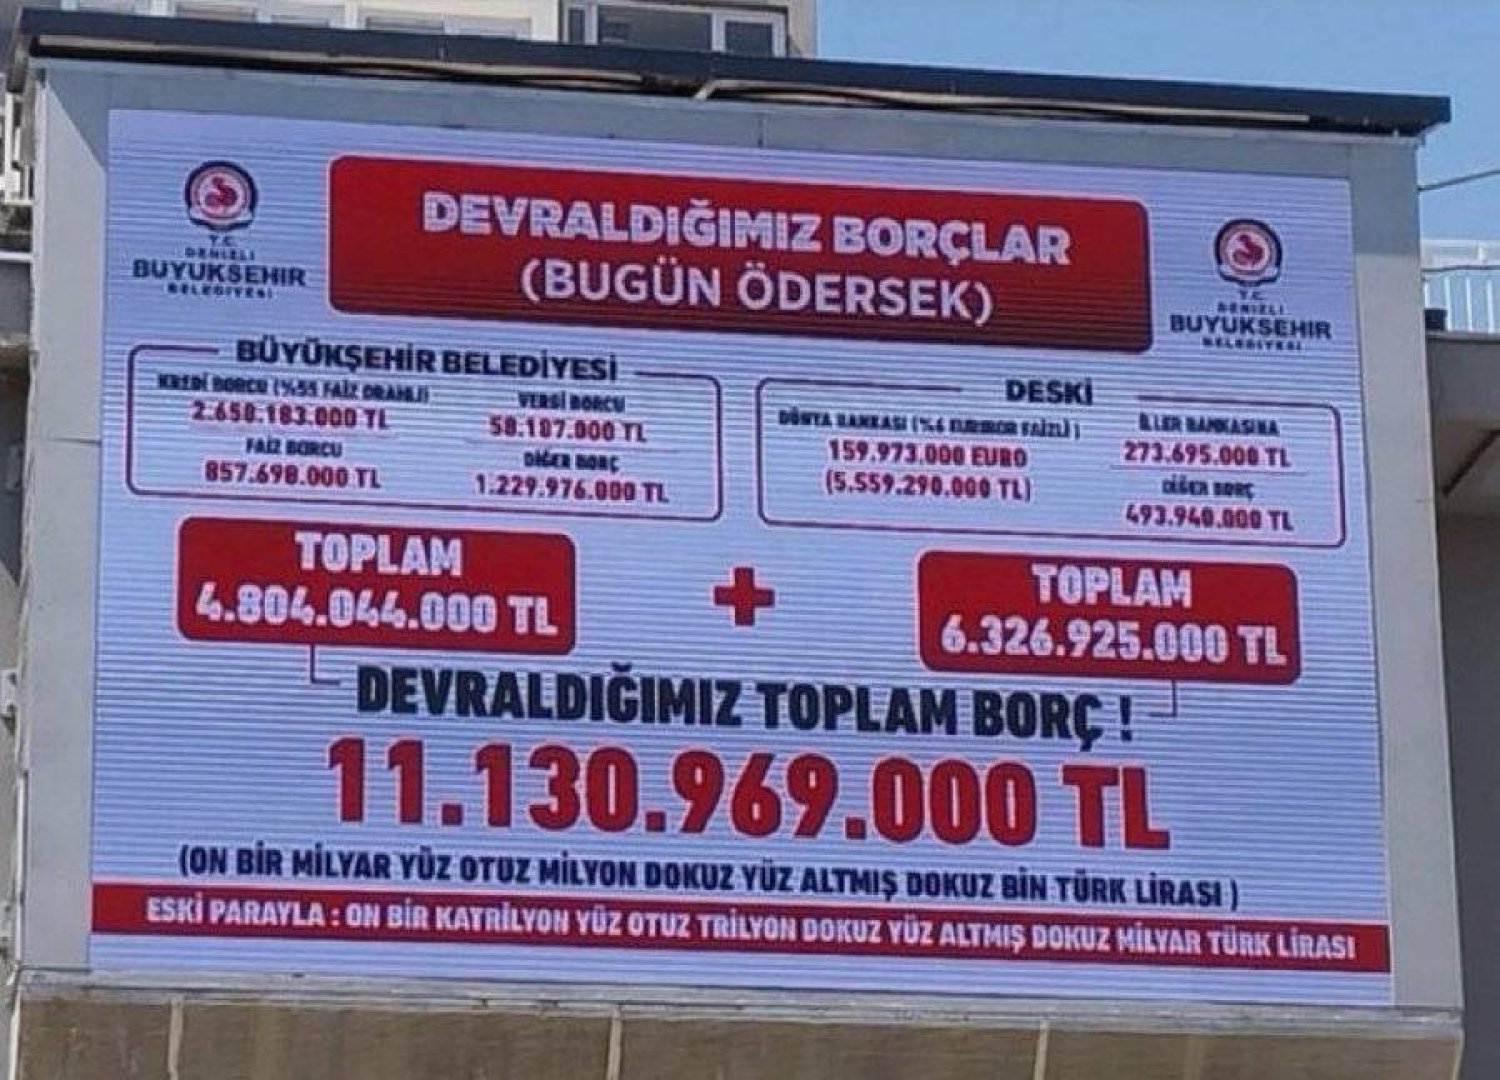 لافتة على واجهة بلدية دنيزلي غرب تركيا تظهر حجم ديونها (منصة إكس)